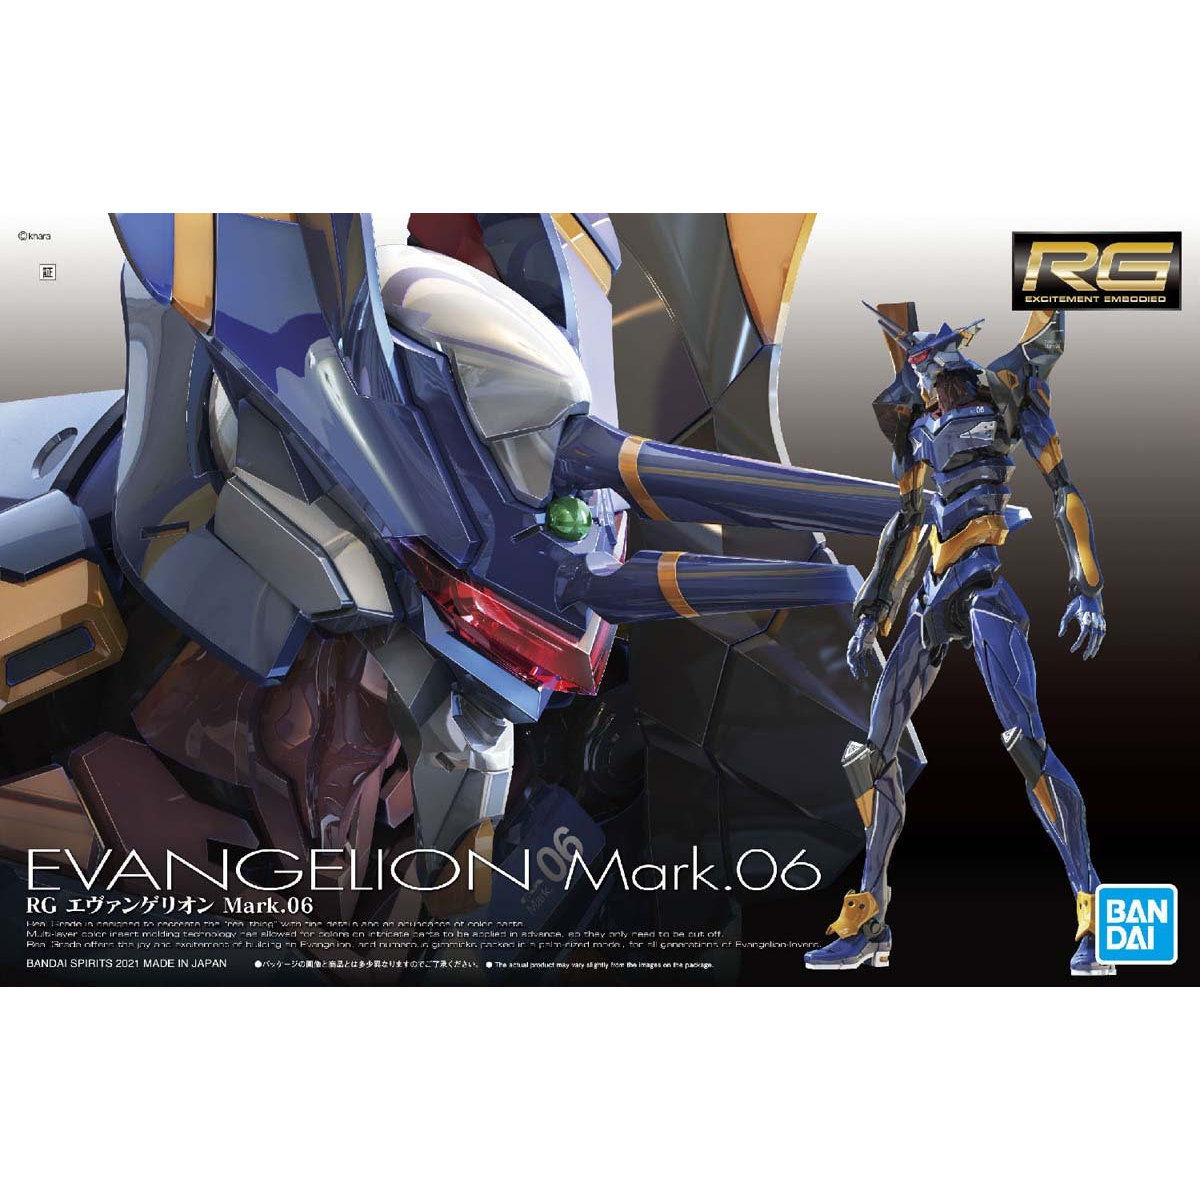 Bandai Figure Evangelion Model Kit Anime Figures RG 1/144 EVA 02 Evangelion  Production Model-02 Action Figure Toys For Boys